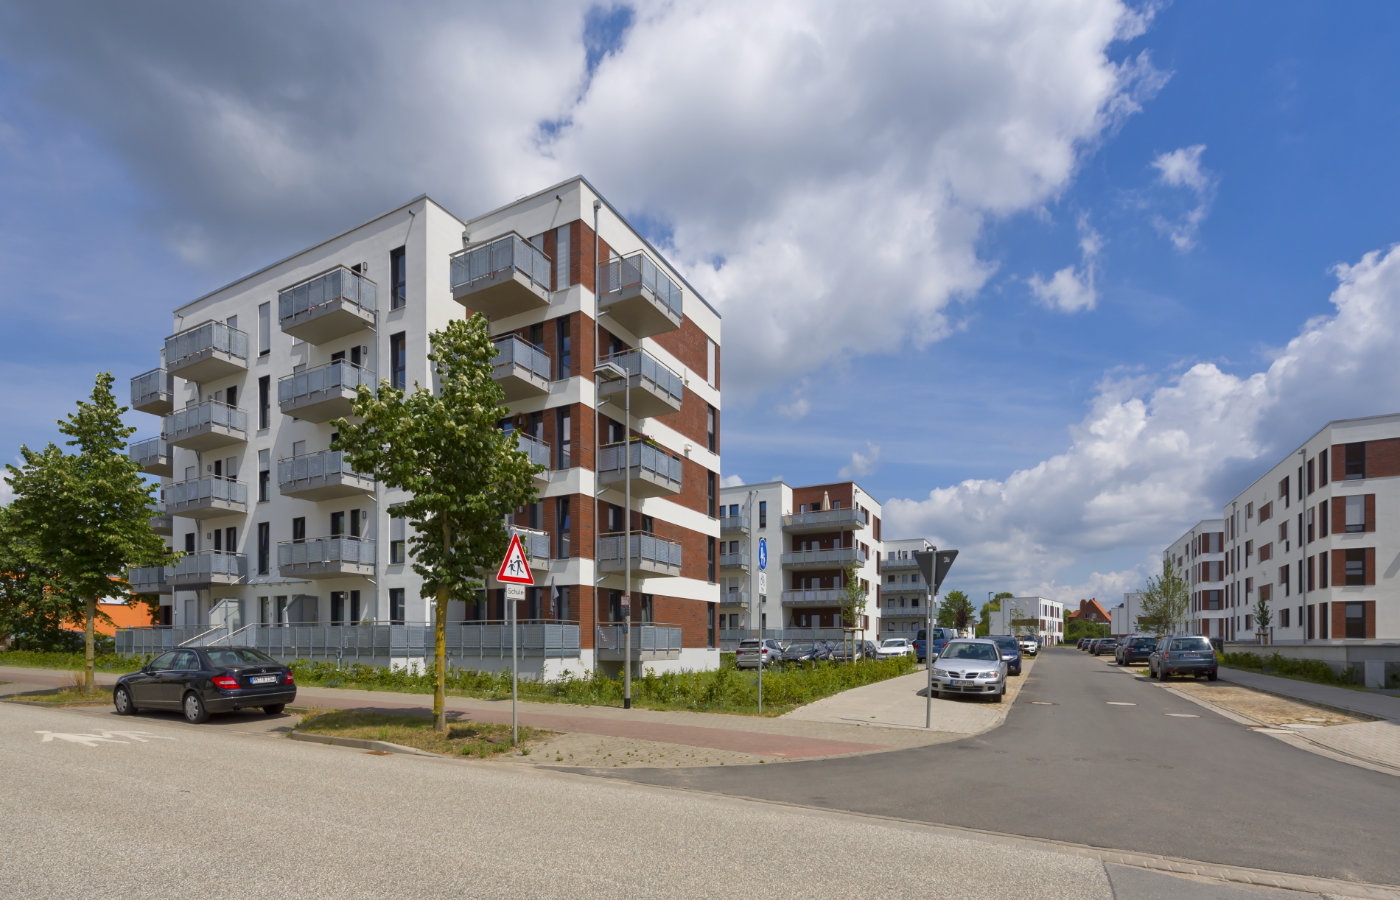 Projektentwicklung für den Neubau von Wohnungen in Schwerin 2